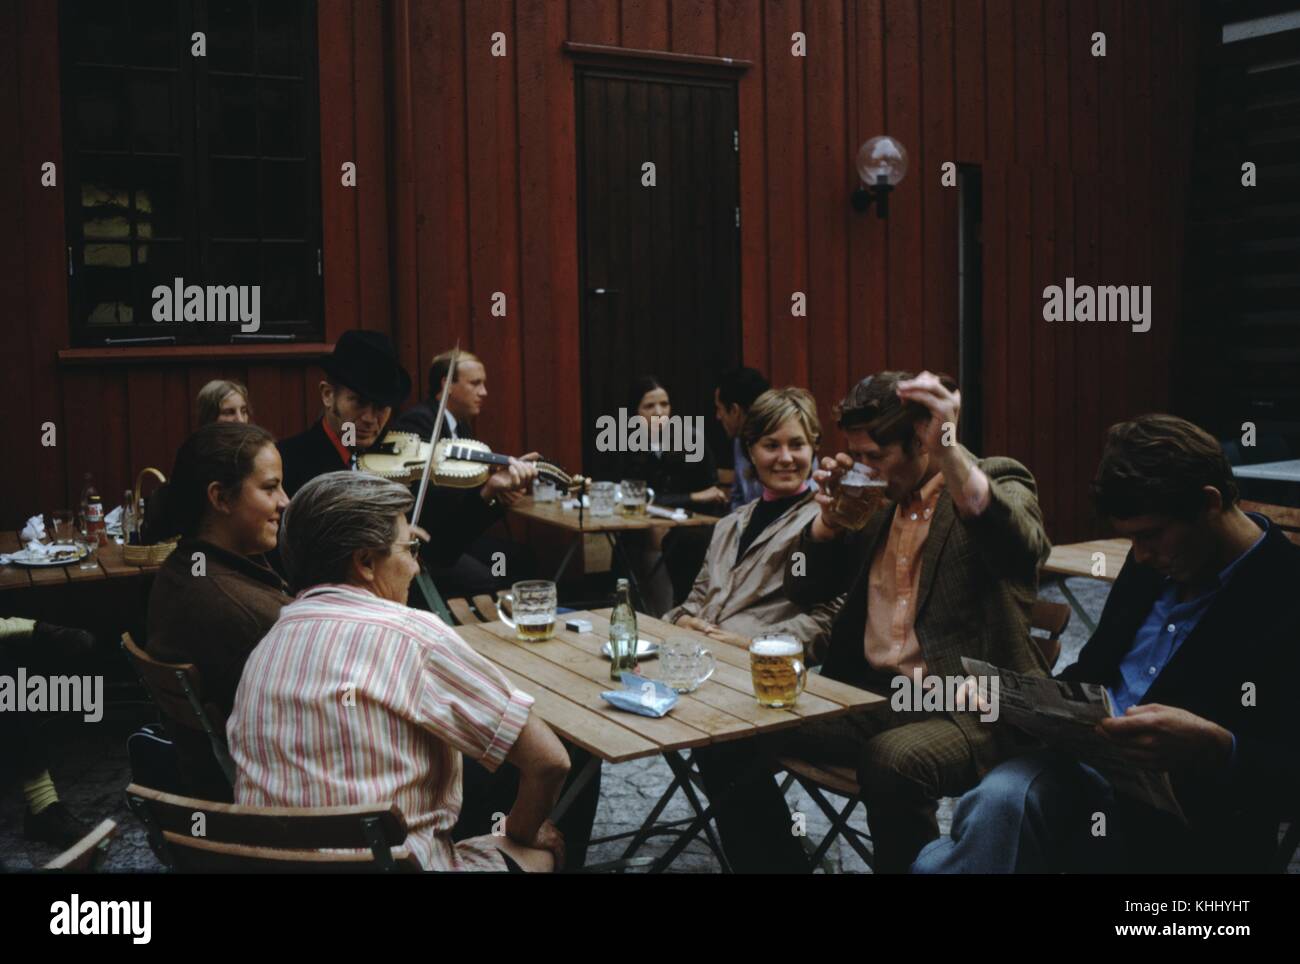 Ein Foto, das eine Familie um einen Tisch in einem Pub, der Vater ist unterhaltsam die Frauen der Familie durch das Trinken von Bier kräftig, der Sohn ein Papier liest, während ein Mann spielt eine Violine Musik dazu spielt, andere Gruppen von Menschen können im Hintergrund der Terrasse, 1961 gesehen werden. Stockfoto